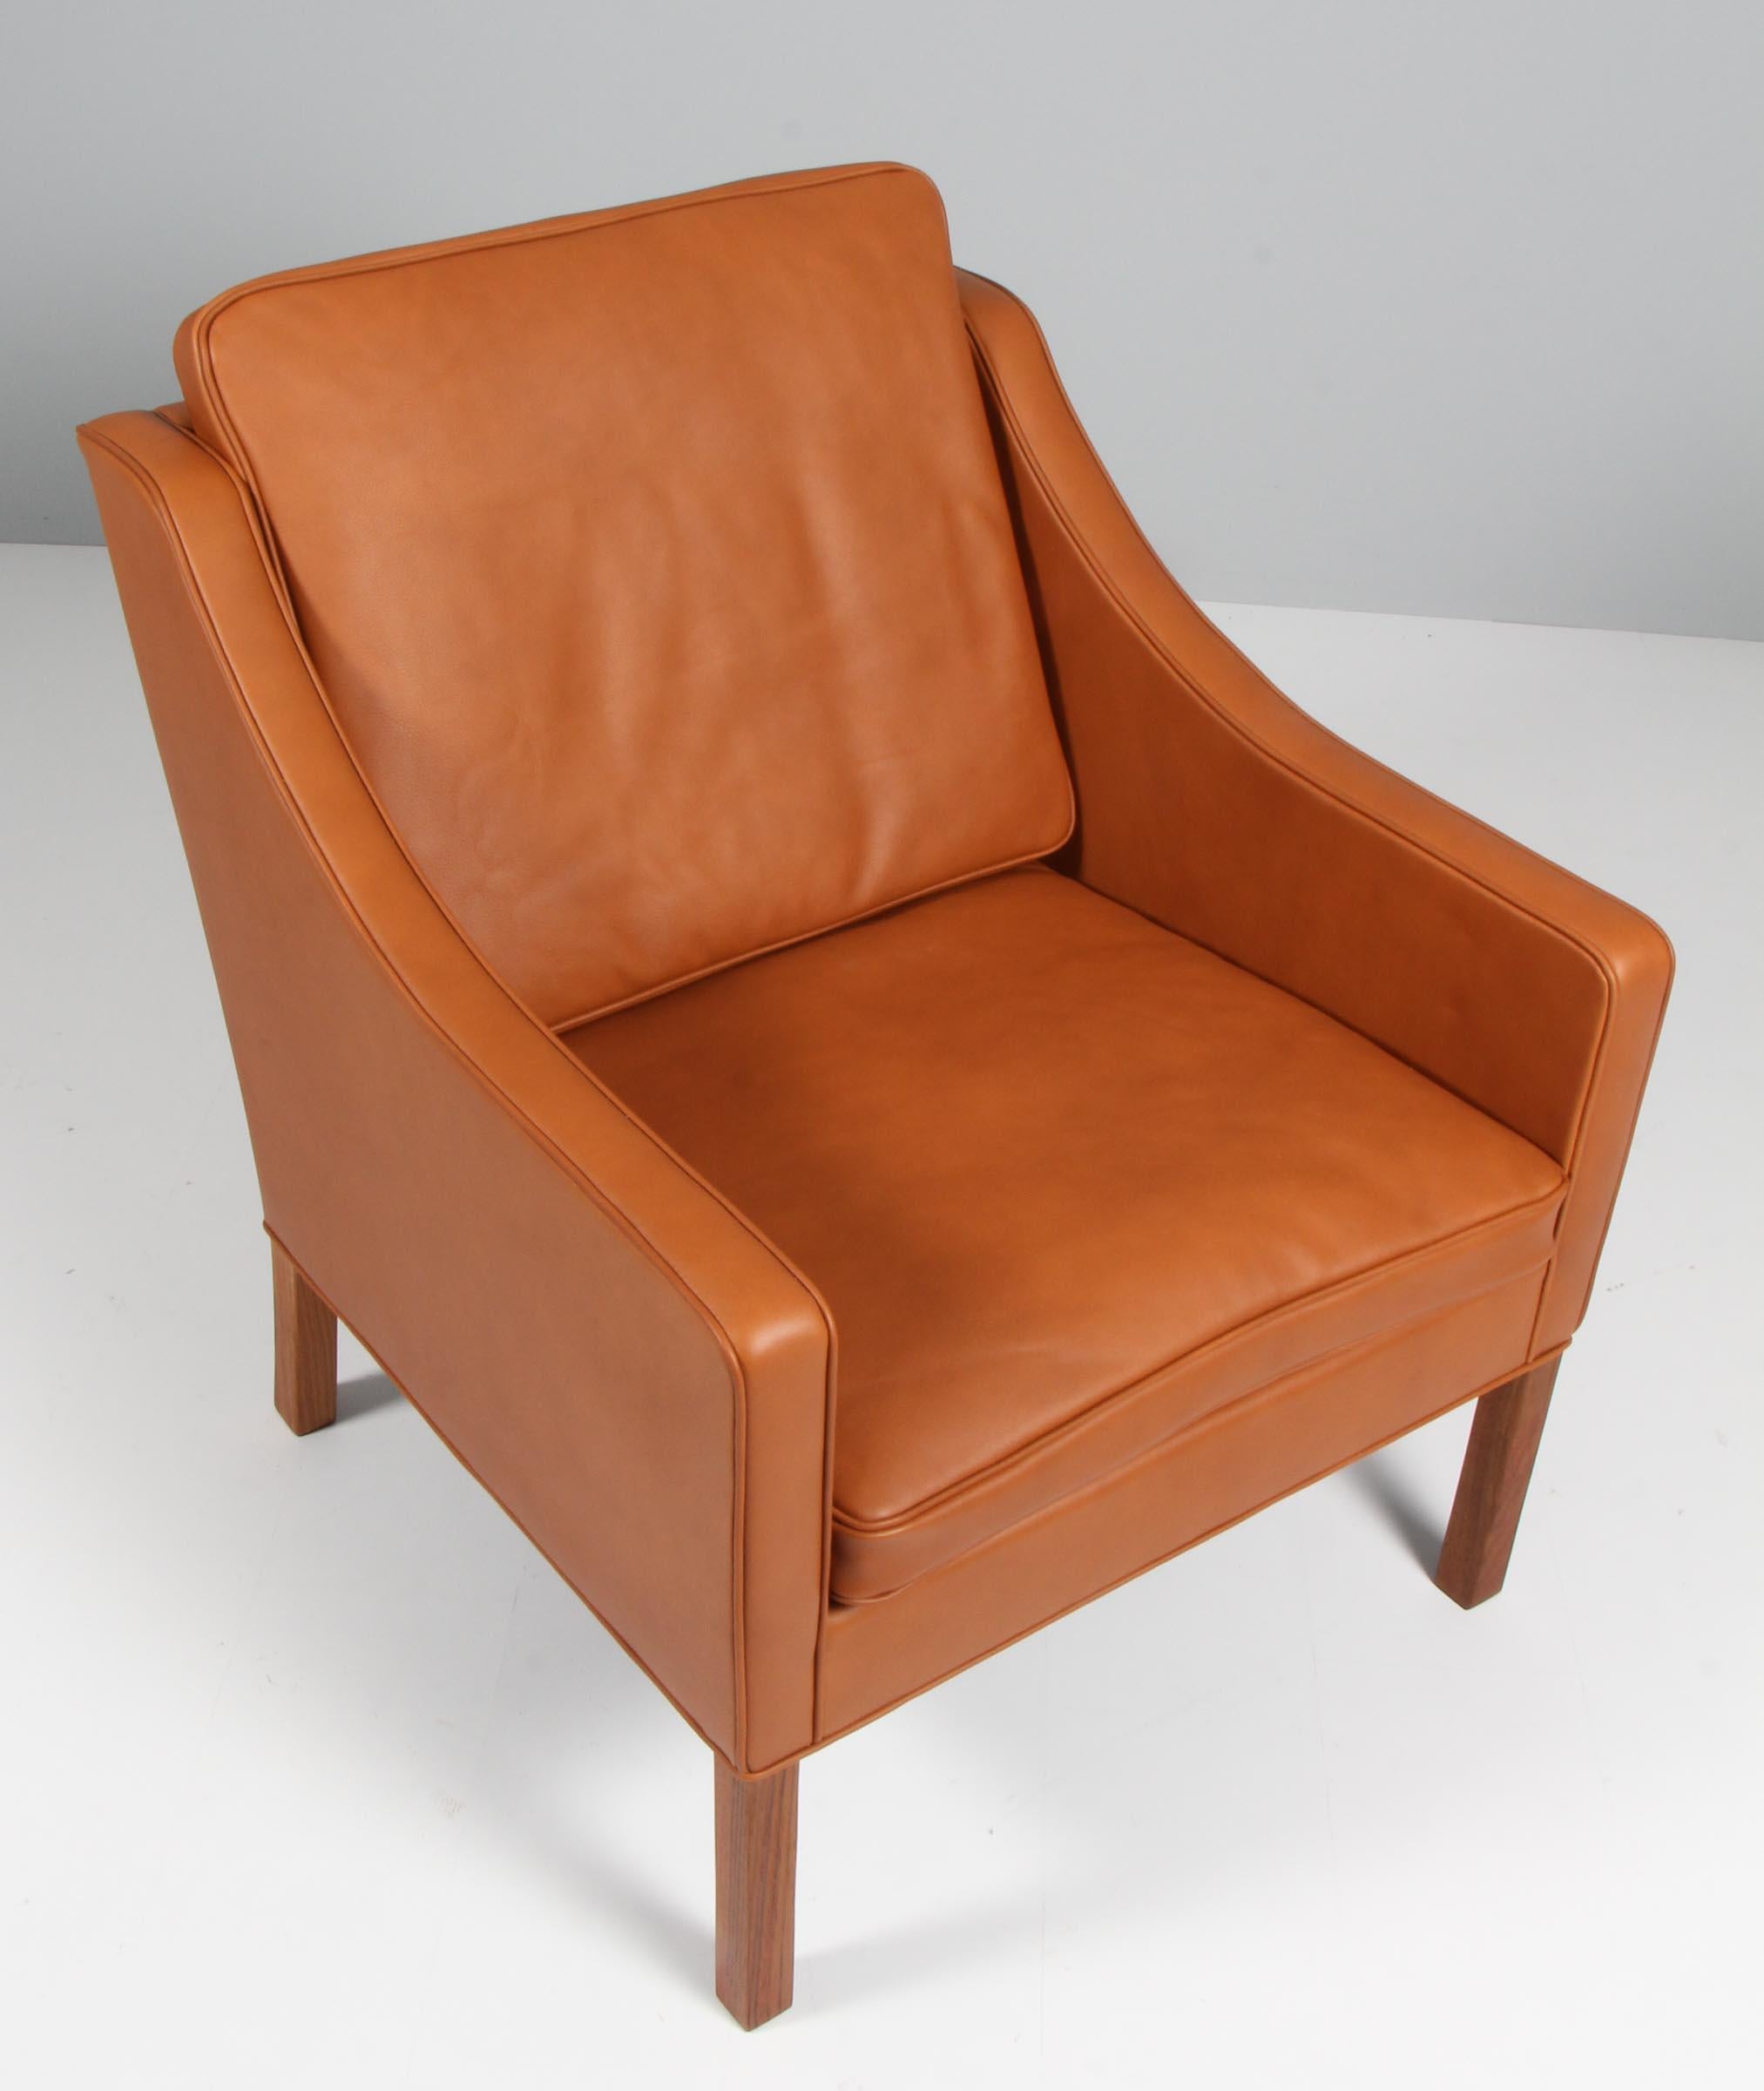 Børge Mogensen Sessel neu gepolstert mit Walnuss Elegance Anilinleder.

Beine aus Teakholz.

Modell 2207, hergestellt von Fredericia furniture.